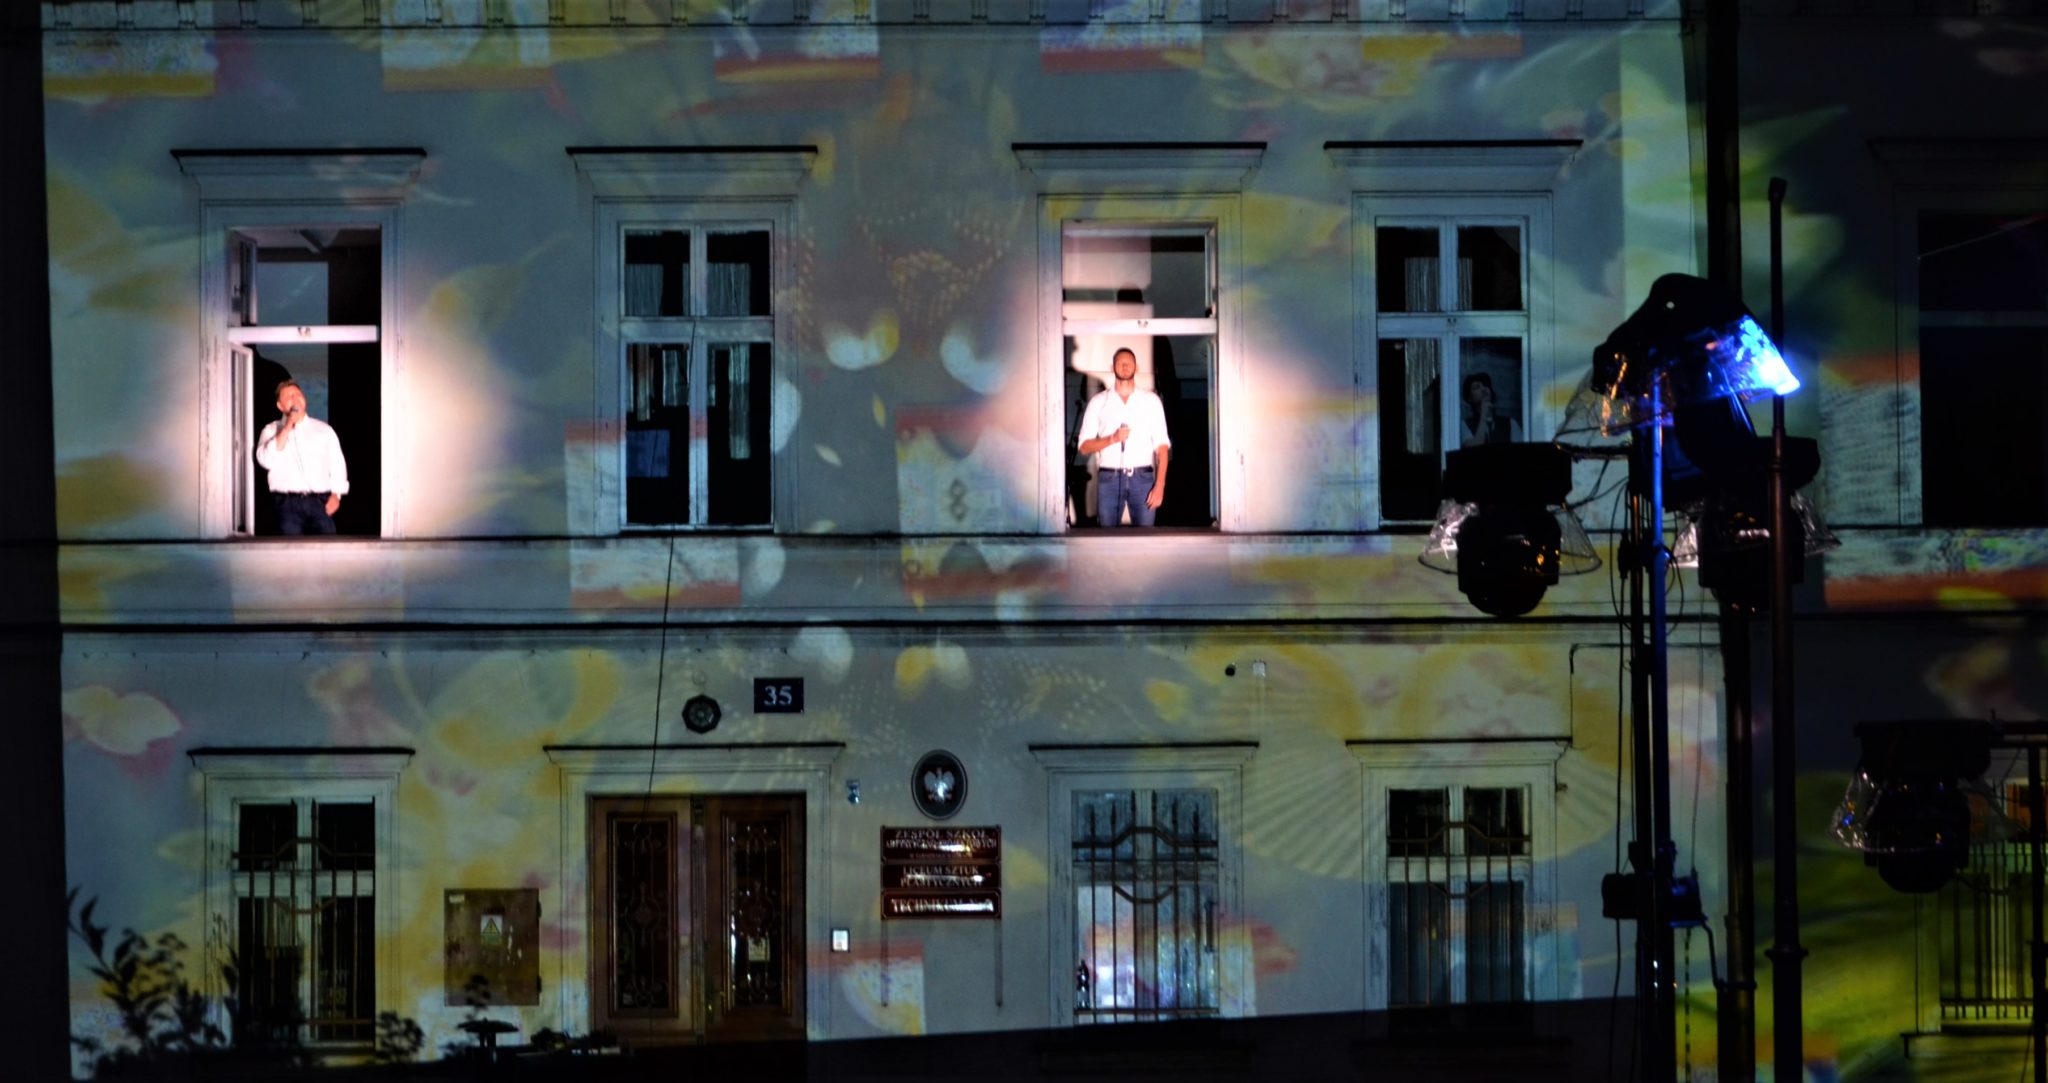 ściana budynku z iluminacją świetlną, w dwóch oknach znajdują się stojący mężczyźni